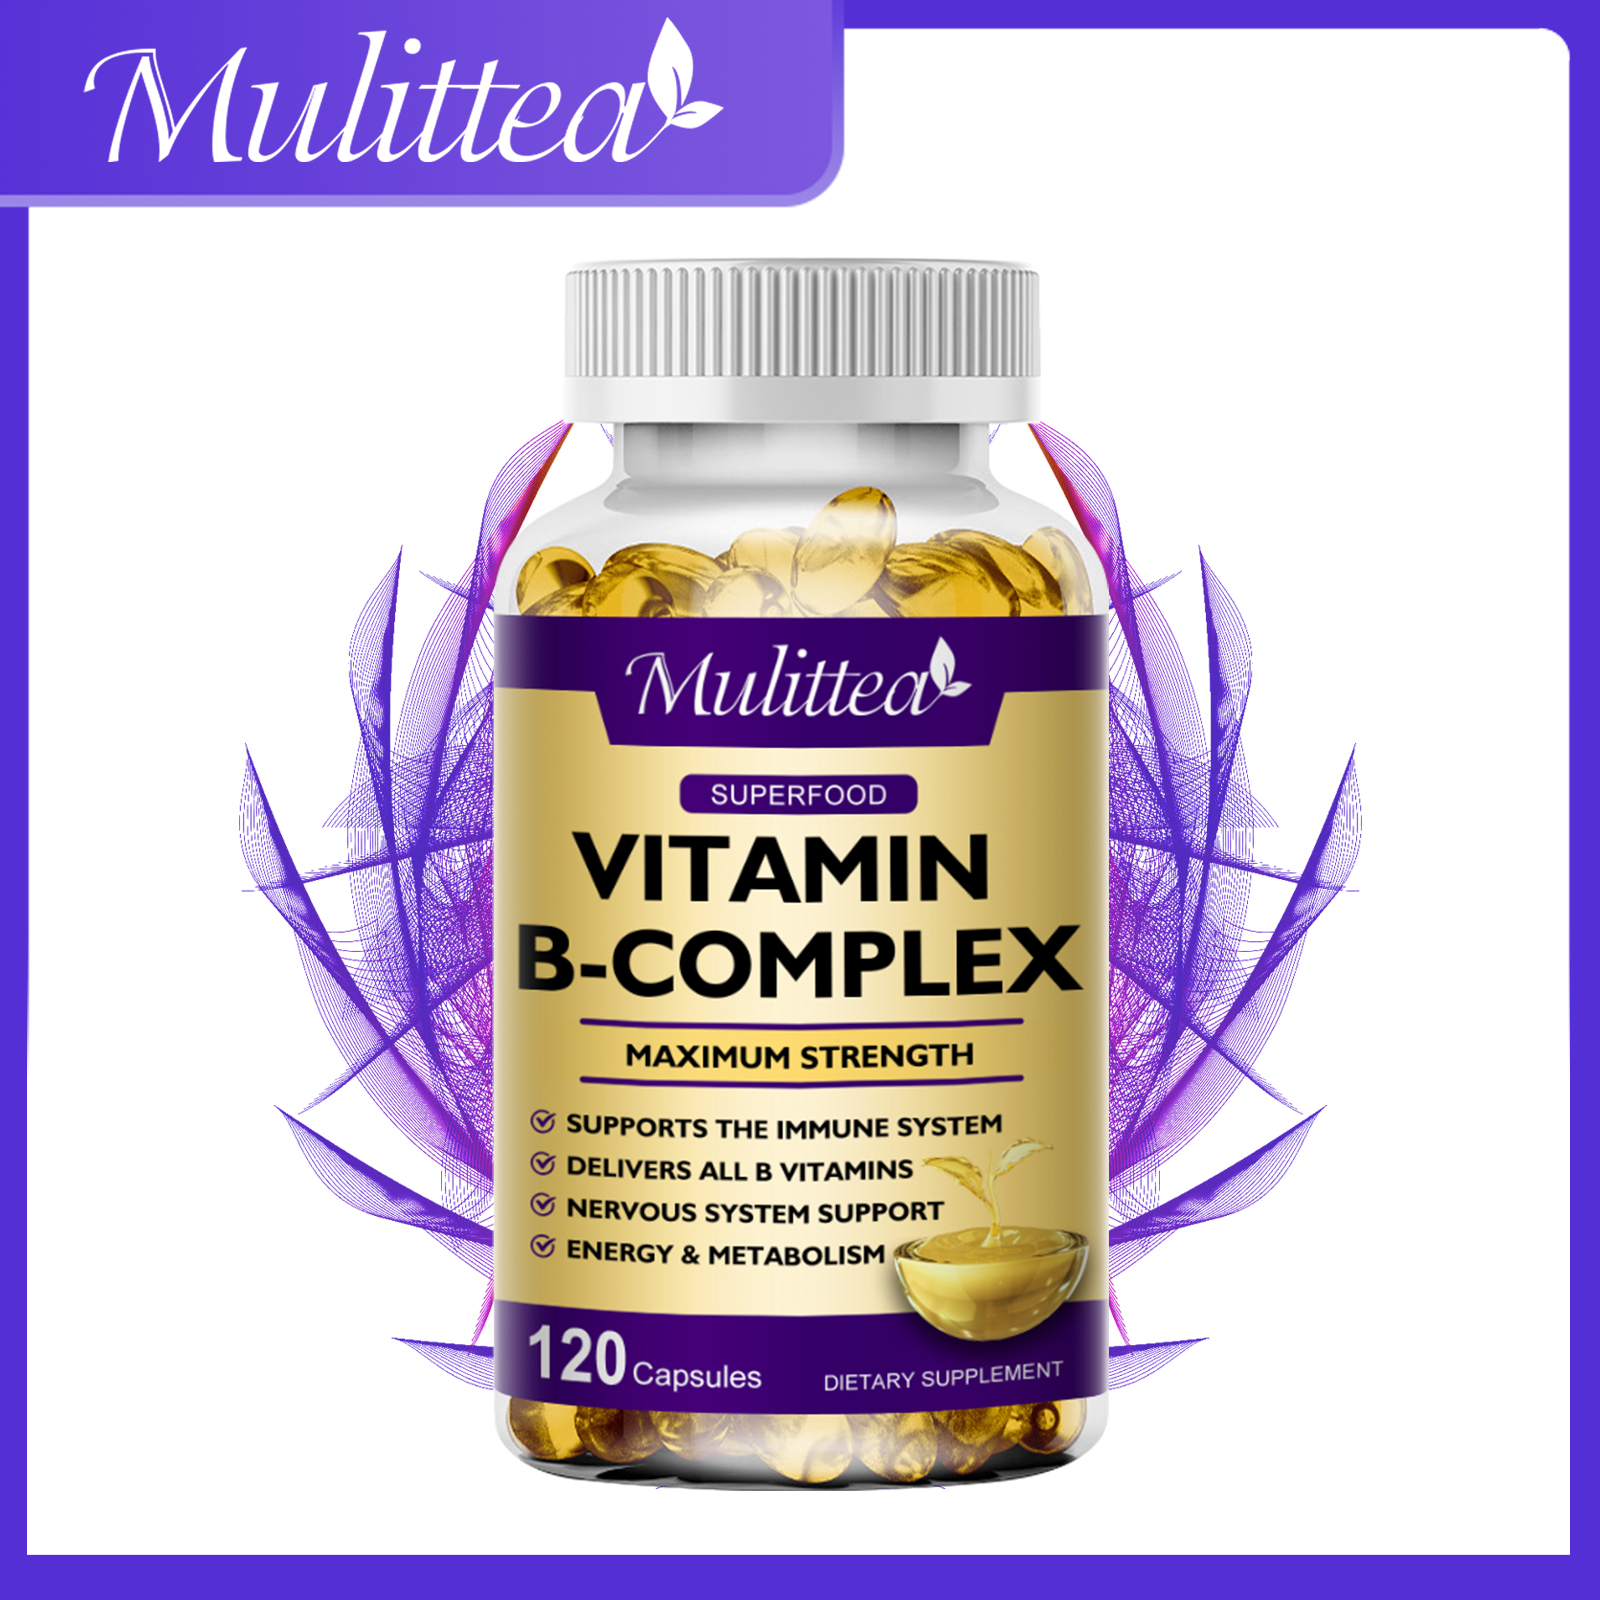 Mulittea Vitamin B Complex Capsules (B12, B1, B2, B3, B5, B6, B7, B9, Folate và Biotin) để giảm căng thẳng, hỗ trợ tâm trạng tốt hơn và giúp hệ thần kinh khỏe mạnh và năng lượng